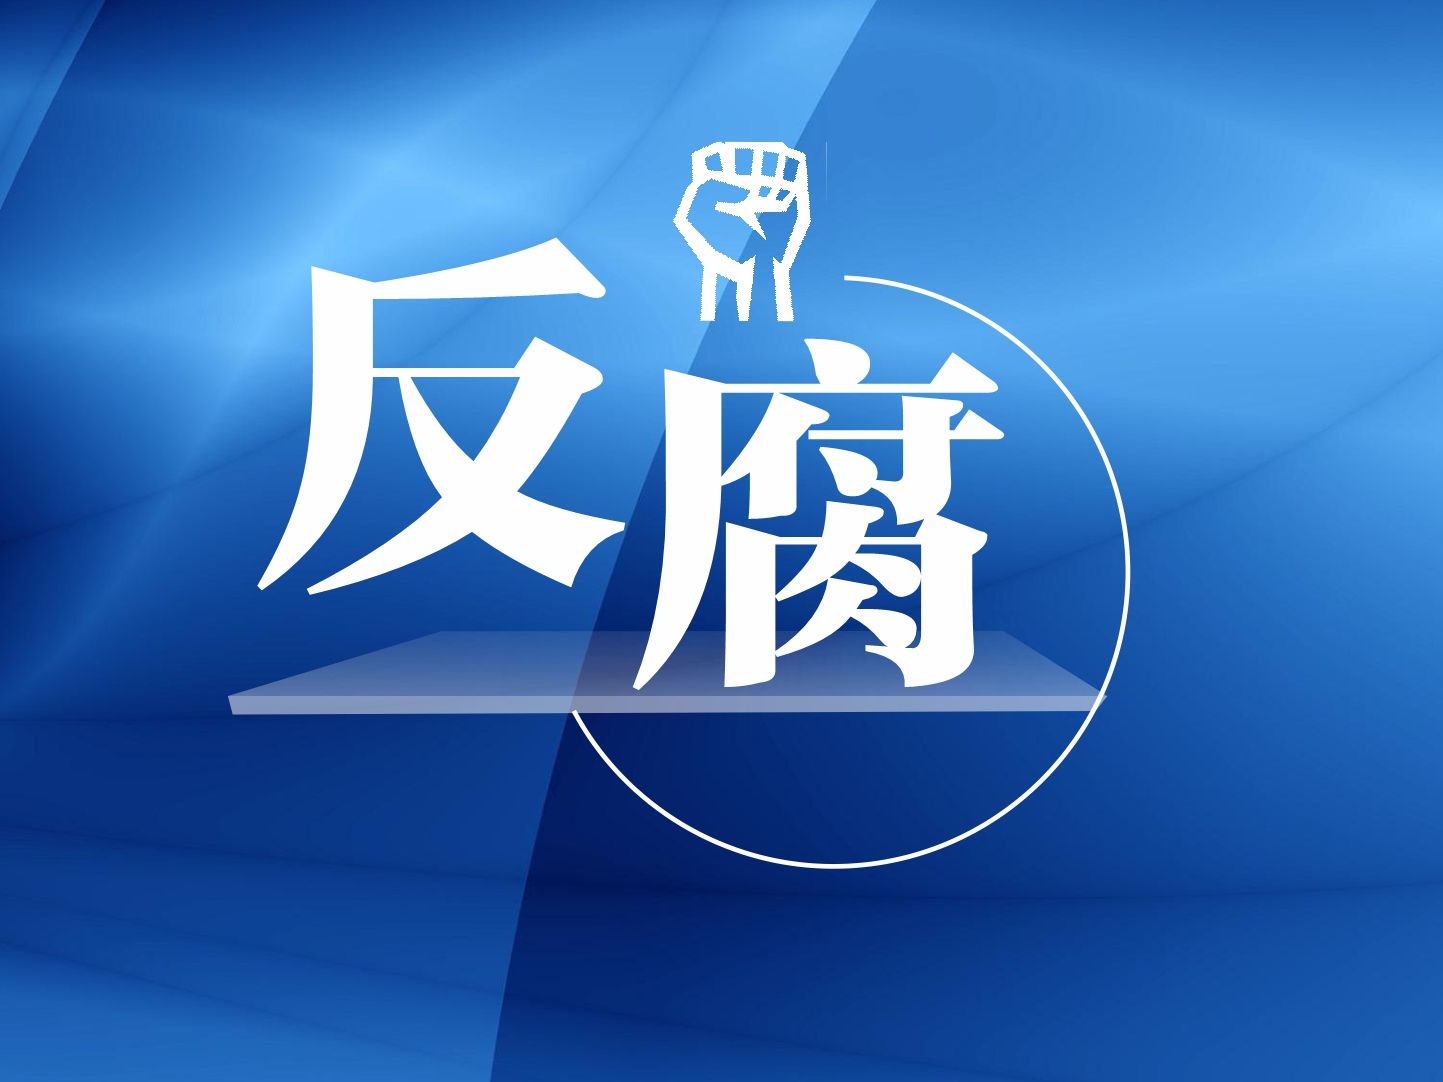 吉林省政协原党组成员、副主席张晓霈严重违纪违法被开除党籍